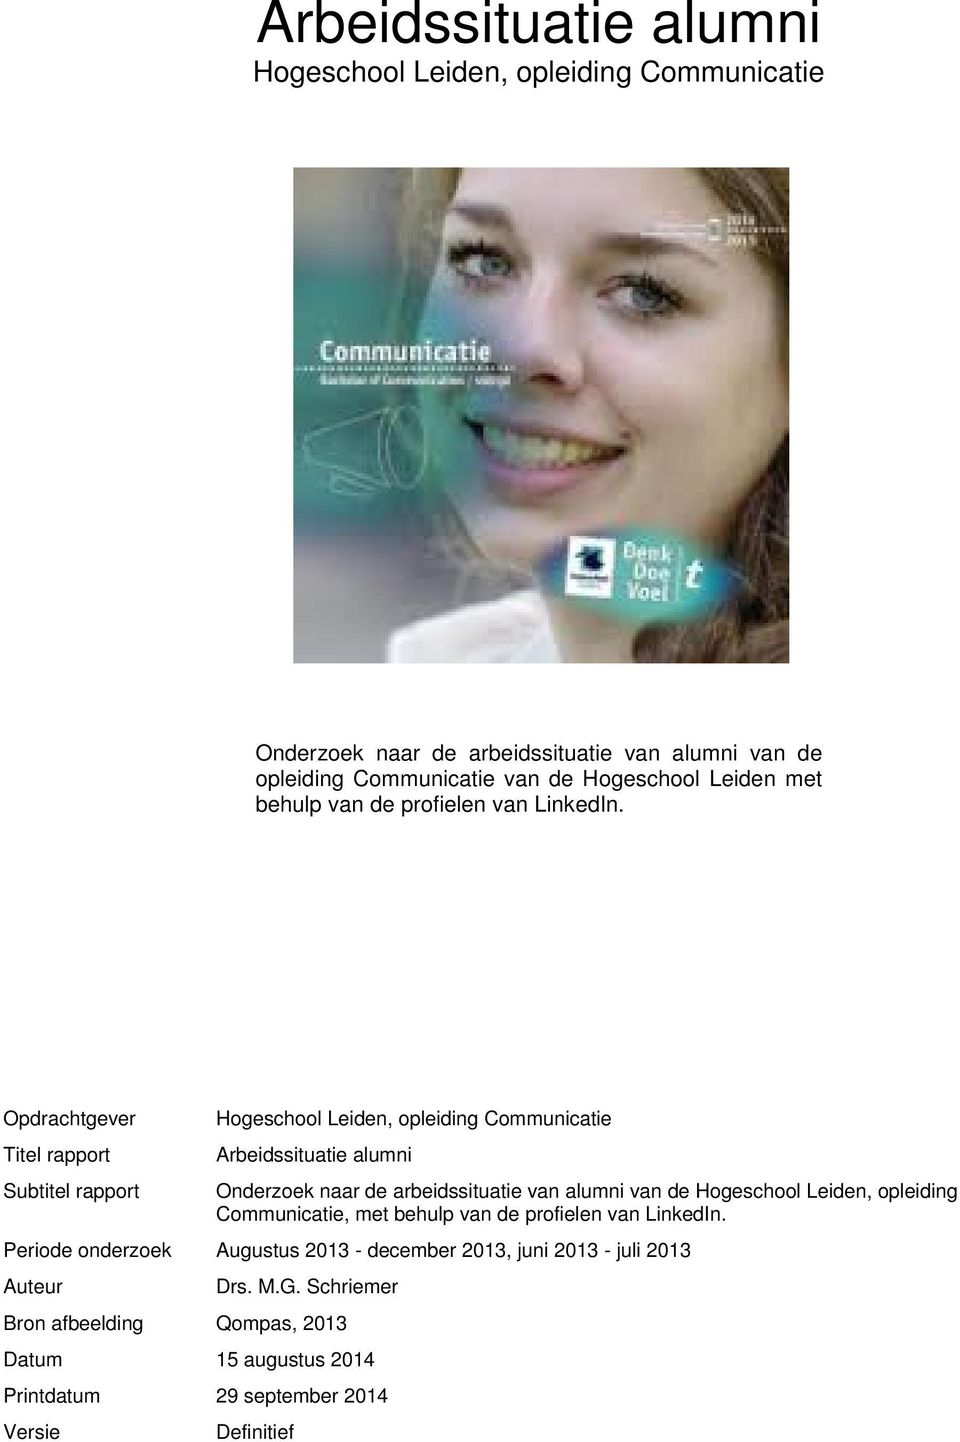 Opdrachtgever Titel rapport Subtitel rapport Hogeschool Leiden, opleiding Communicatie Arbeidssituatie alumni Onderzoek naar de arbeidssituatie van alumni van de